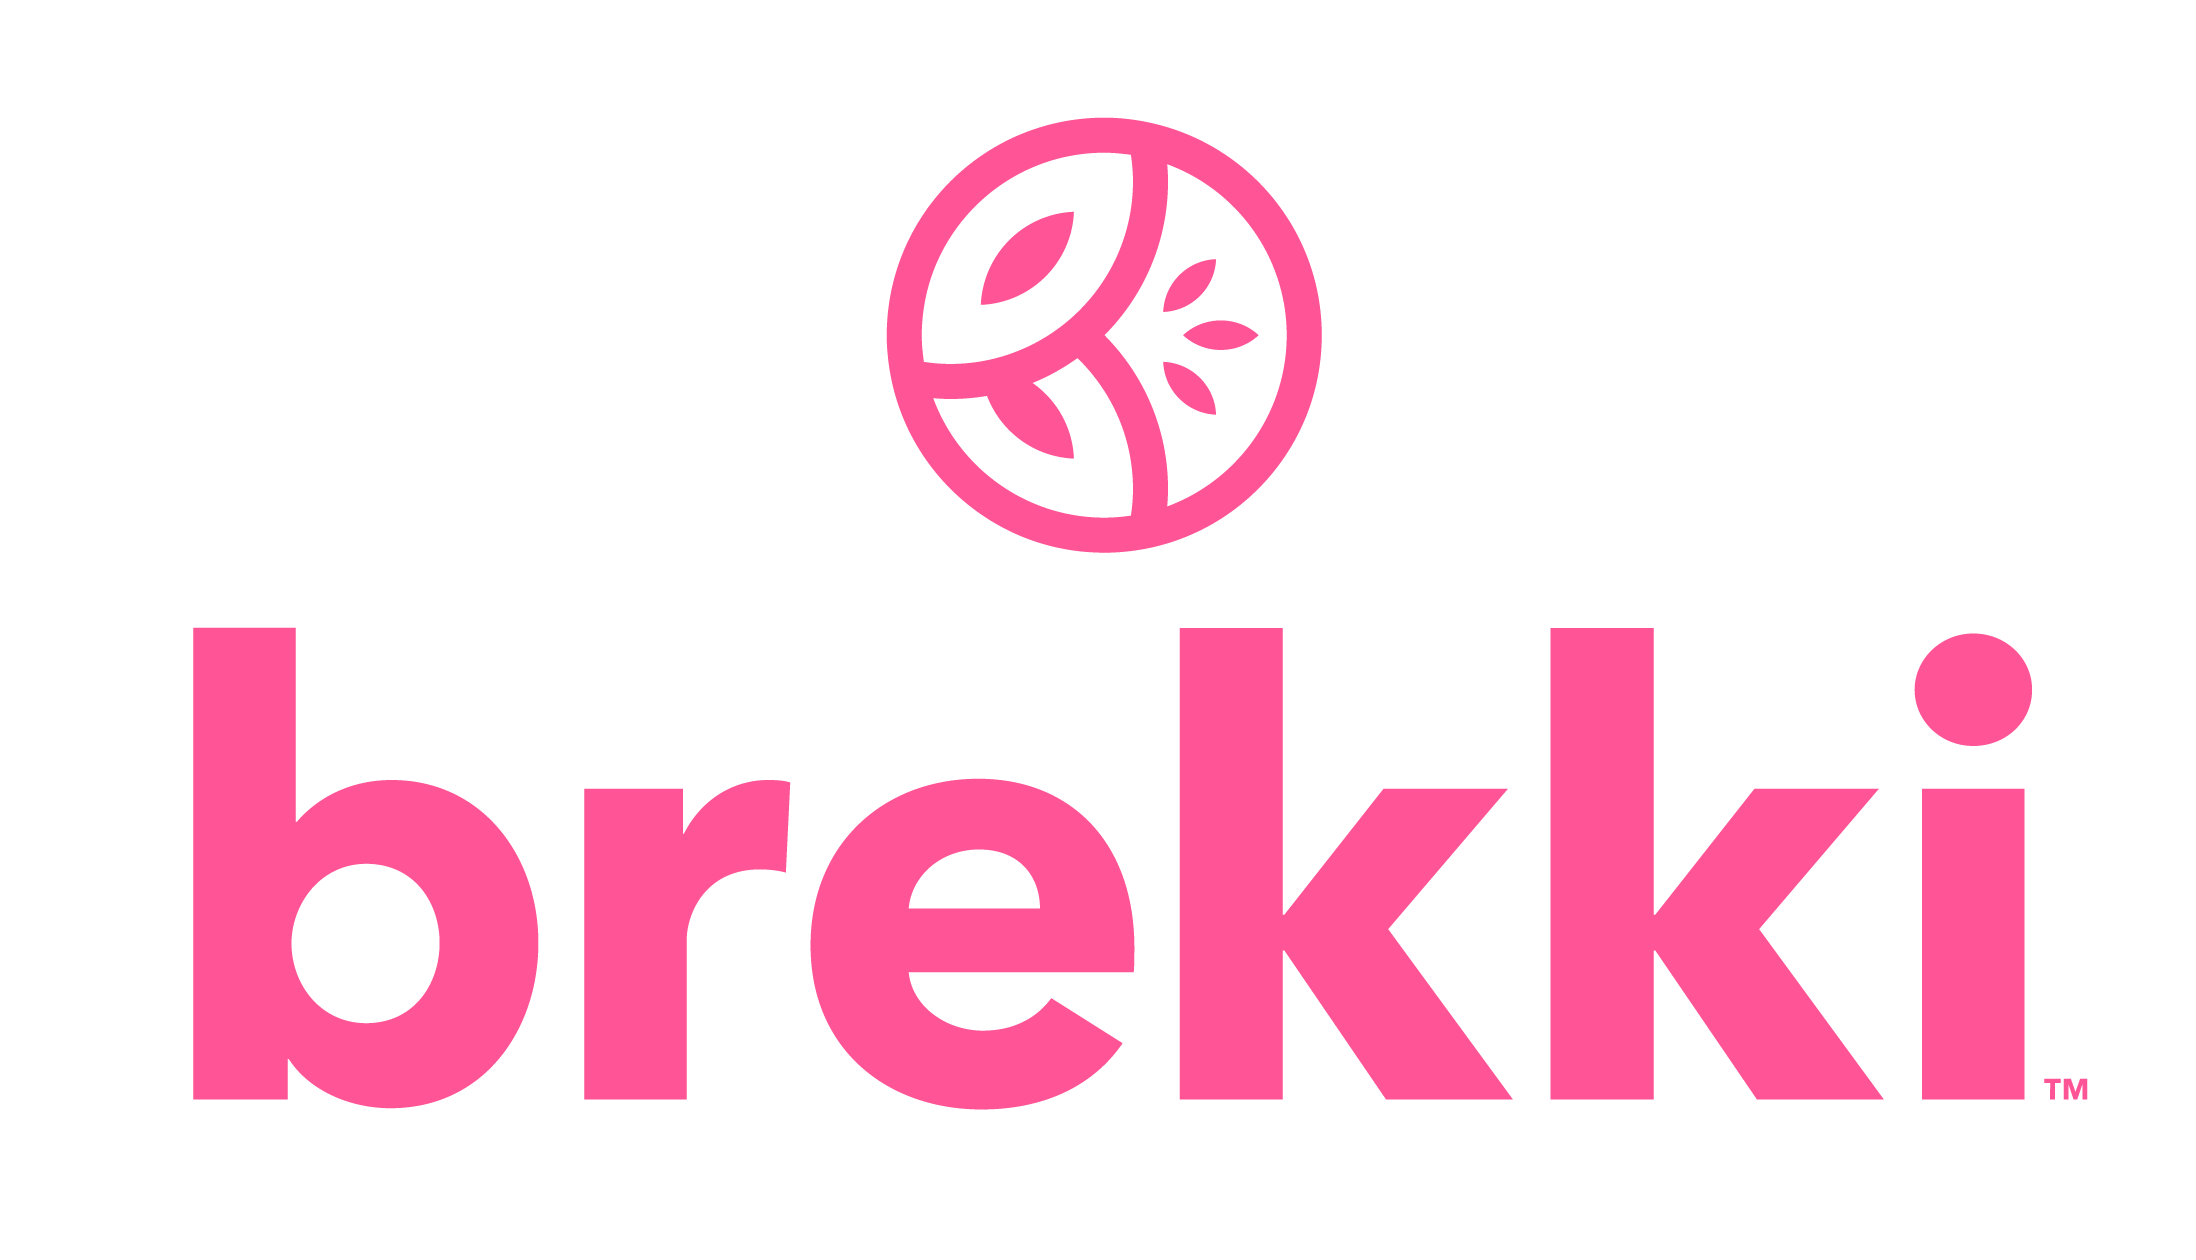 Brekki